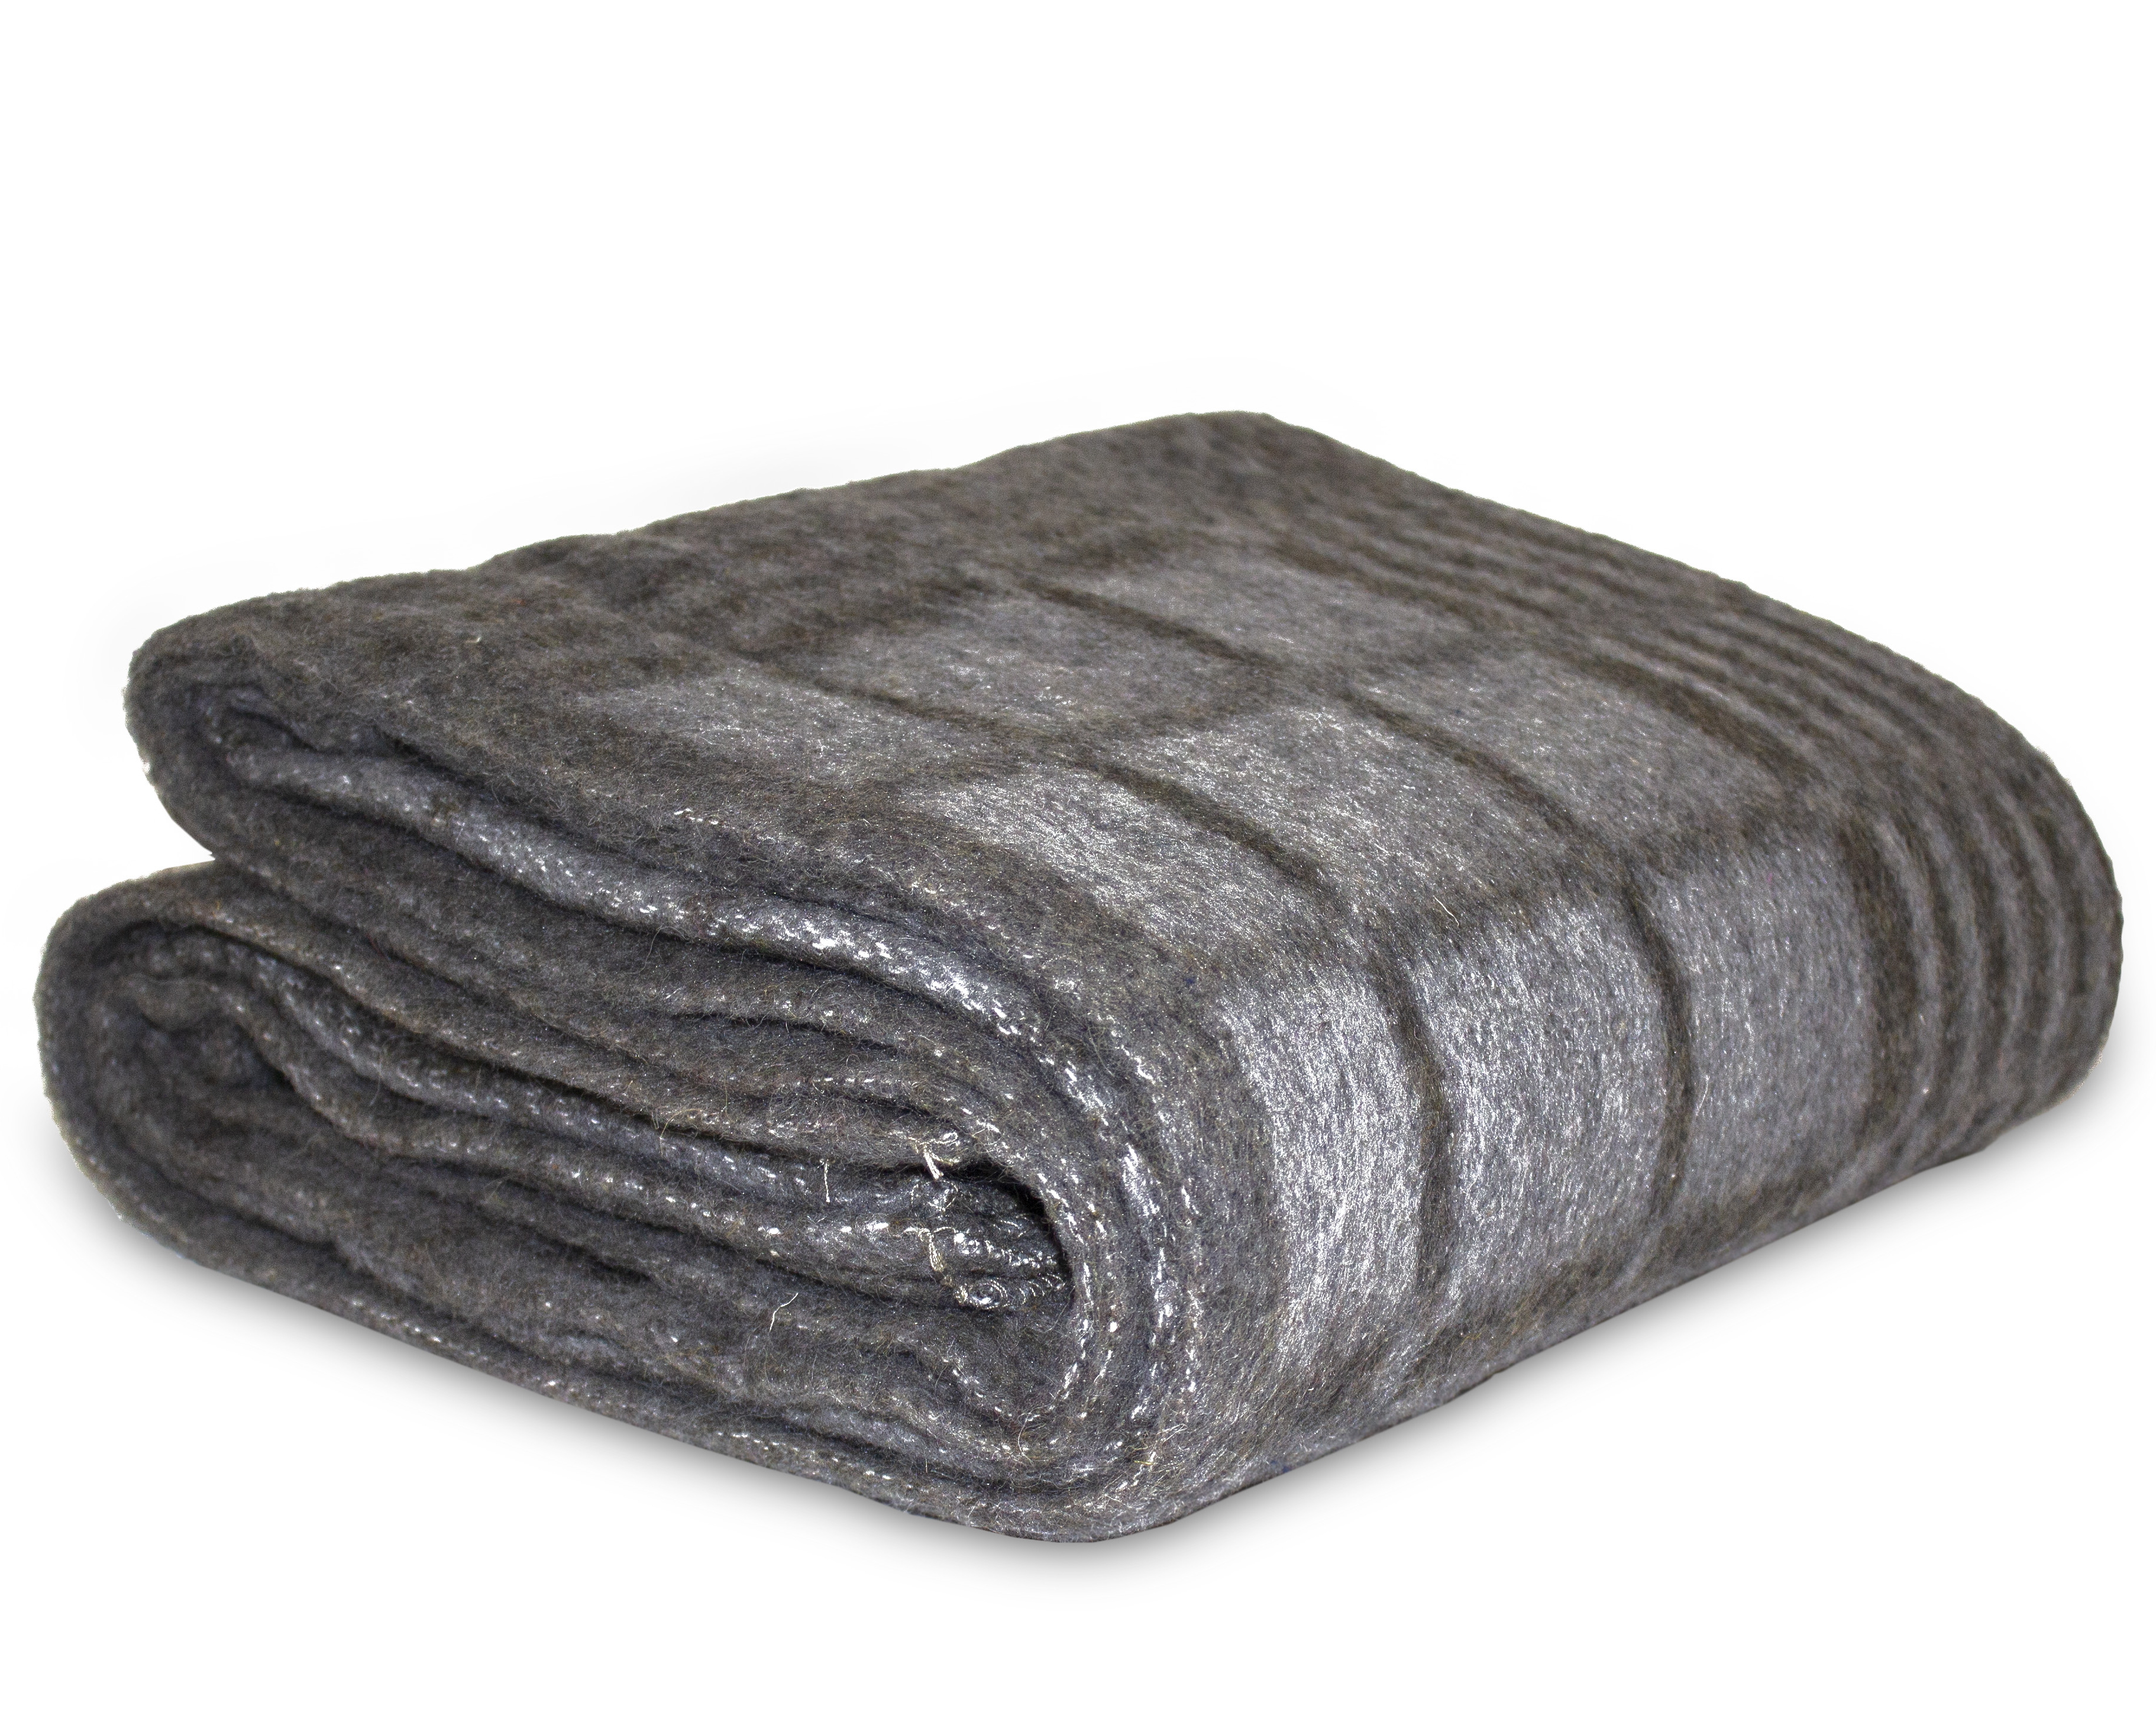 Одеяло 1,5 СП (140х205) п/ш клетка (70% шерсть, 400 г/м2). Одеяло полушерстяное 1.5-спальное Иваново. Одеяло полушерстяное Шуя 140х205. Одеяло полушерстяное 1.5-спальное Шуя. Купить 1.5 одеяло москва